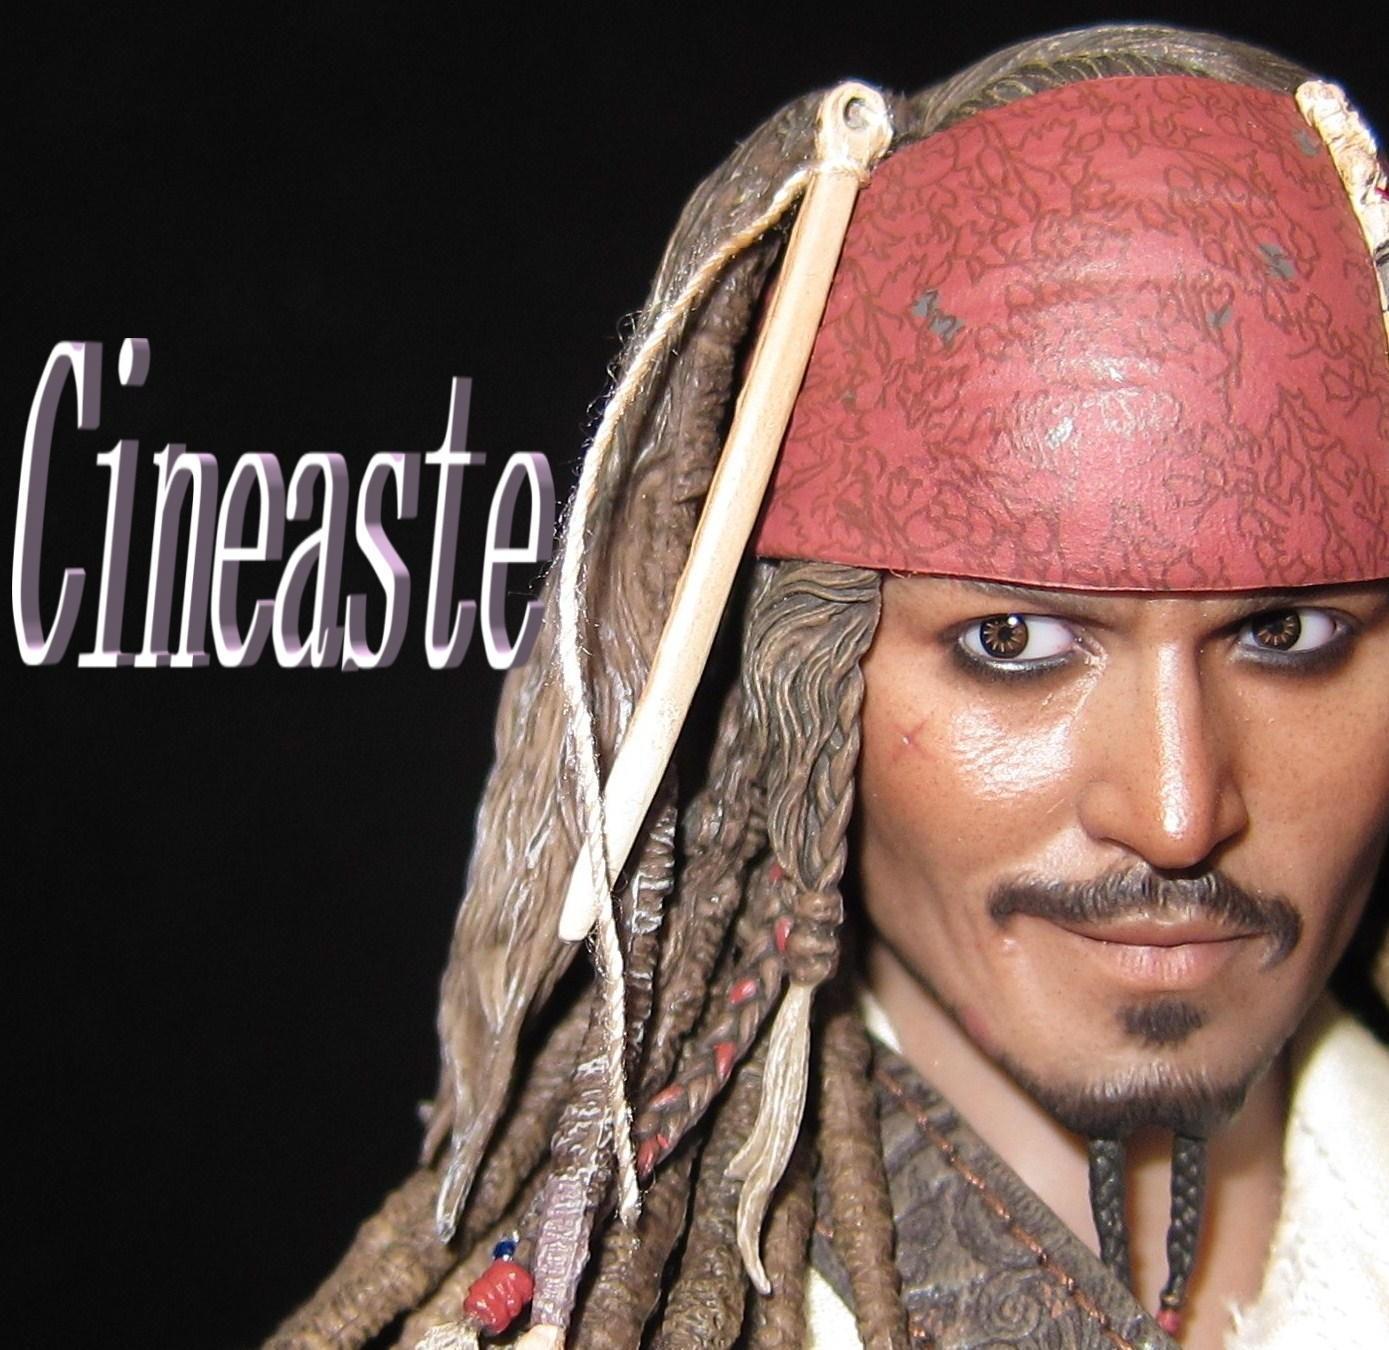 Portrait.Of.Pirates ワンピースシリーズ NEO-DX 神・エネル | Cineastのコレクションブログ 「映画好きなら